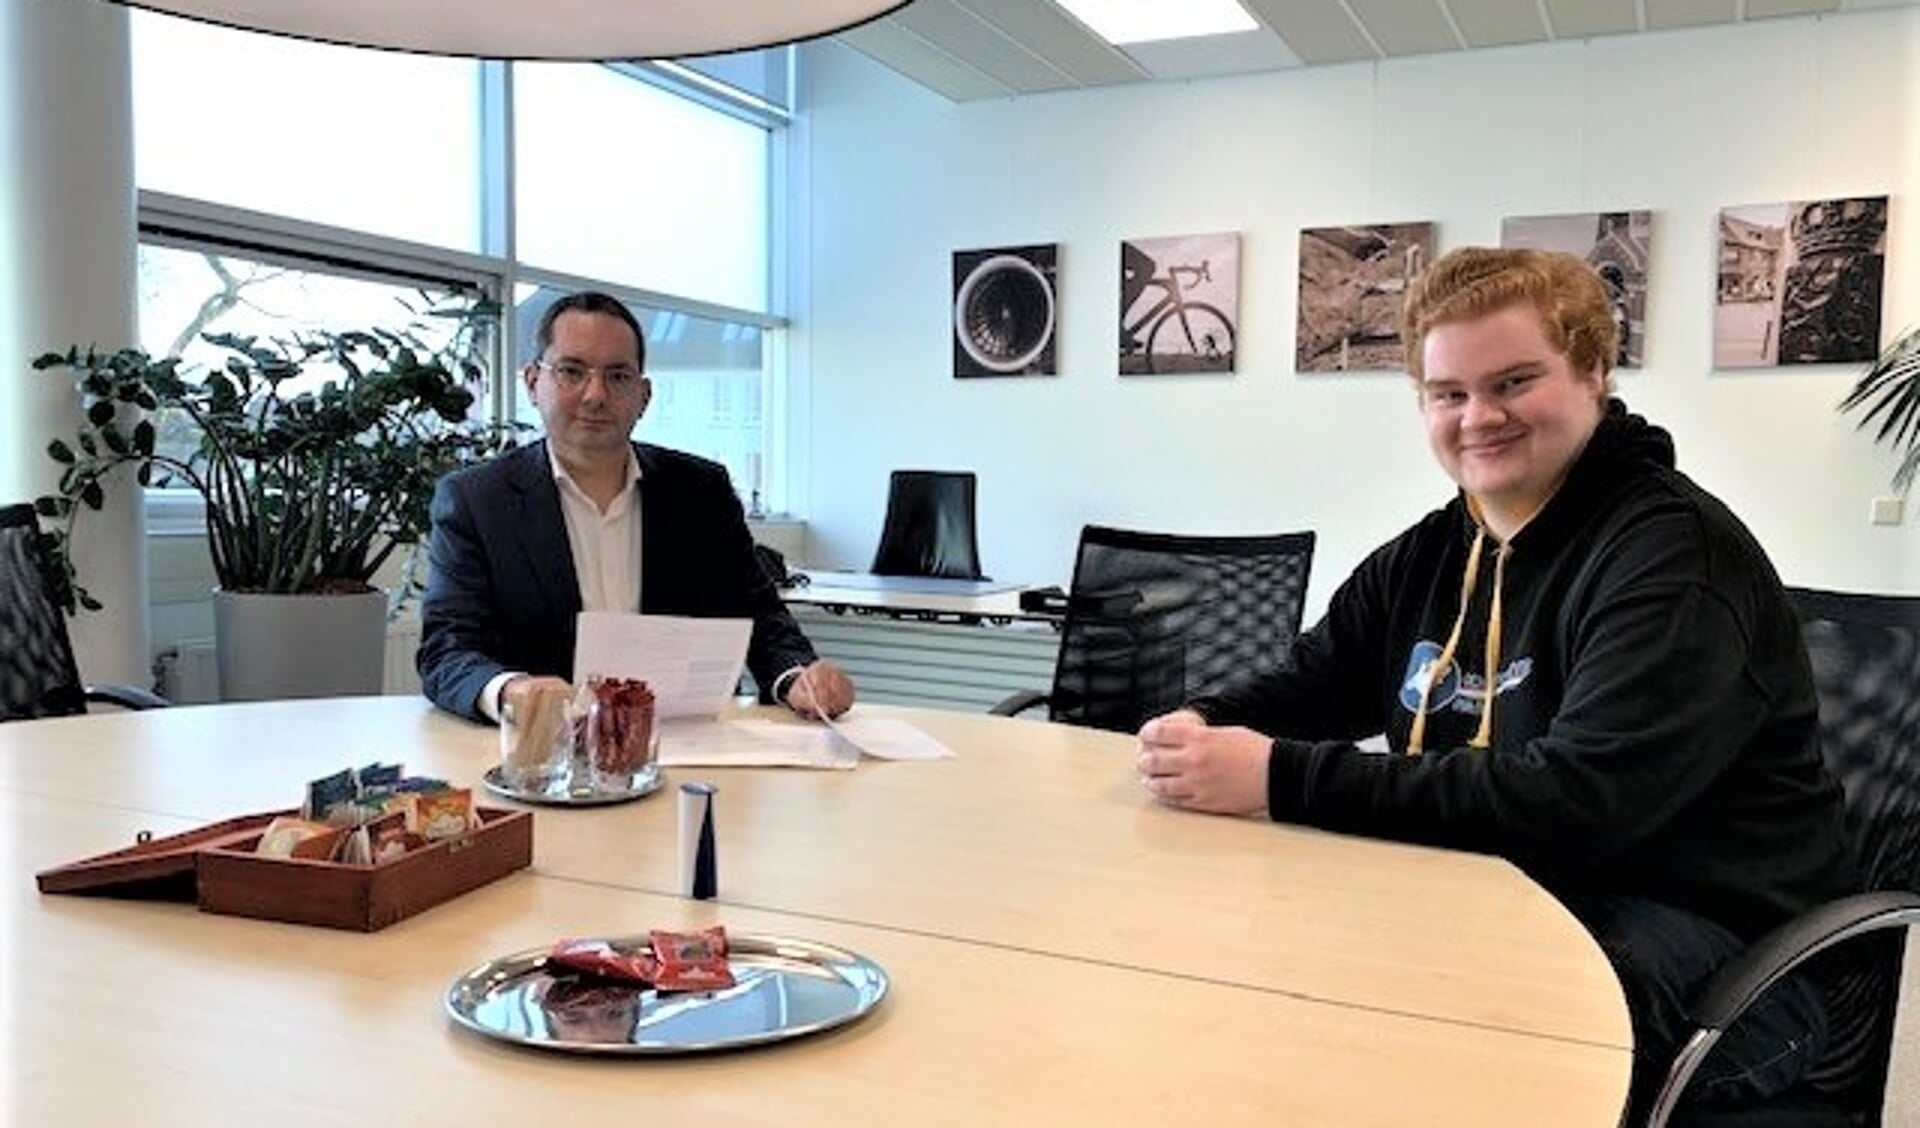 Jens van Kakerken meldt zijn Conservatieve Partij aan bij burgemeester Adriaansen.